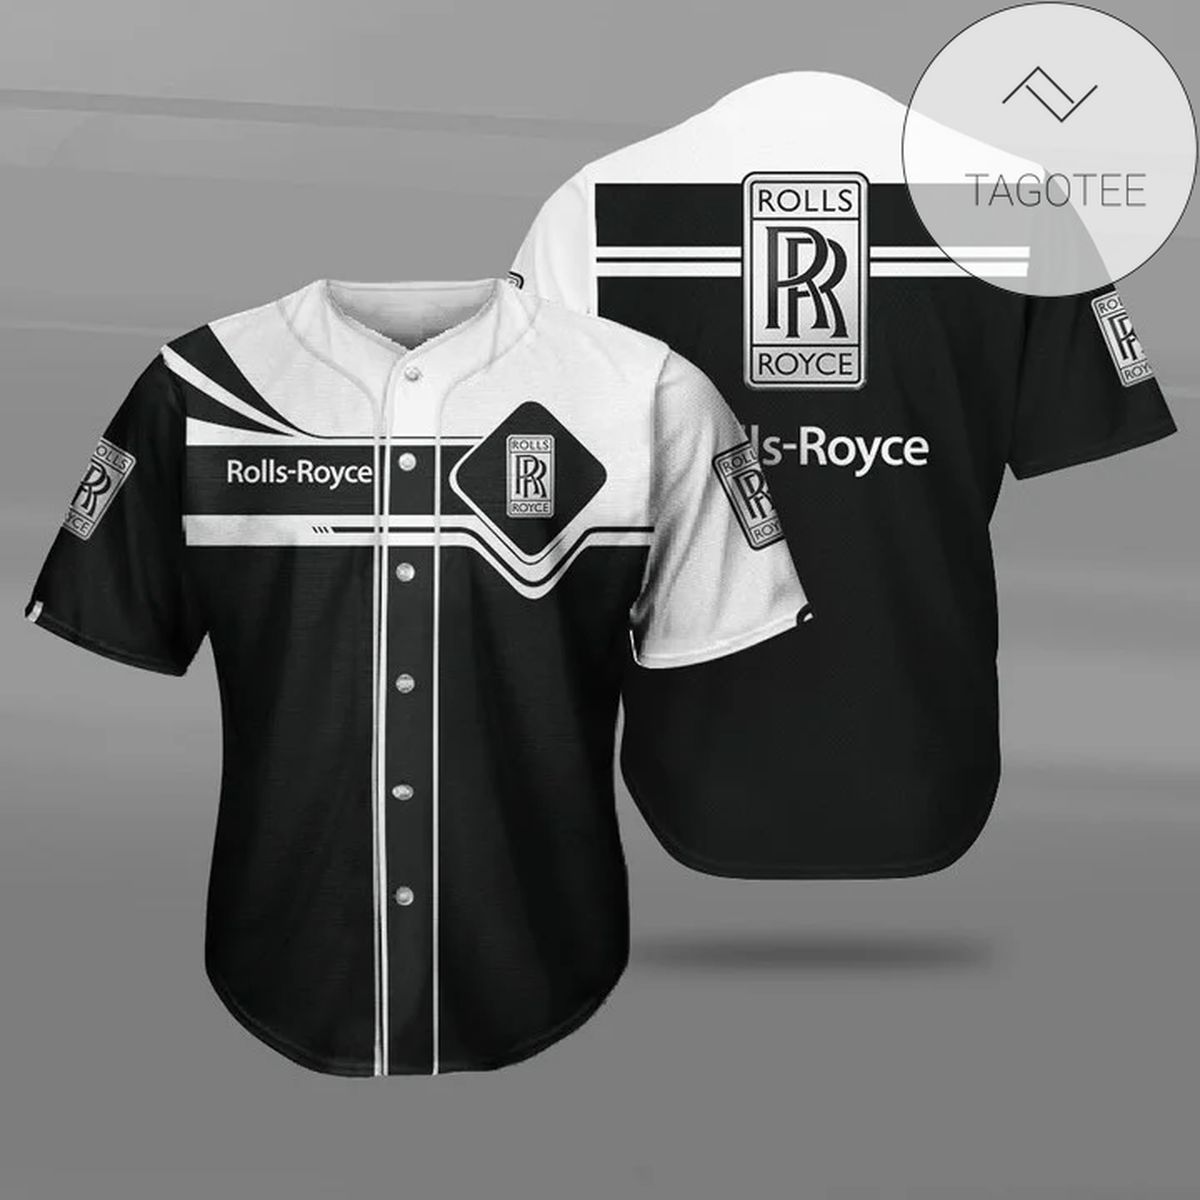 Rolls-Royce Baseball Jersey